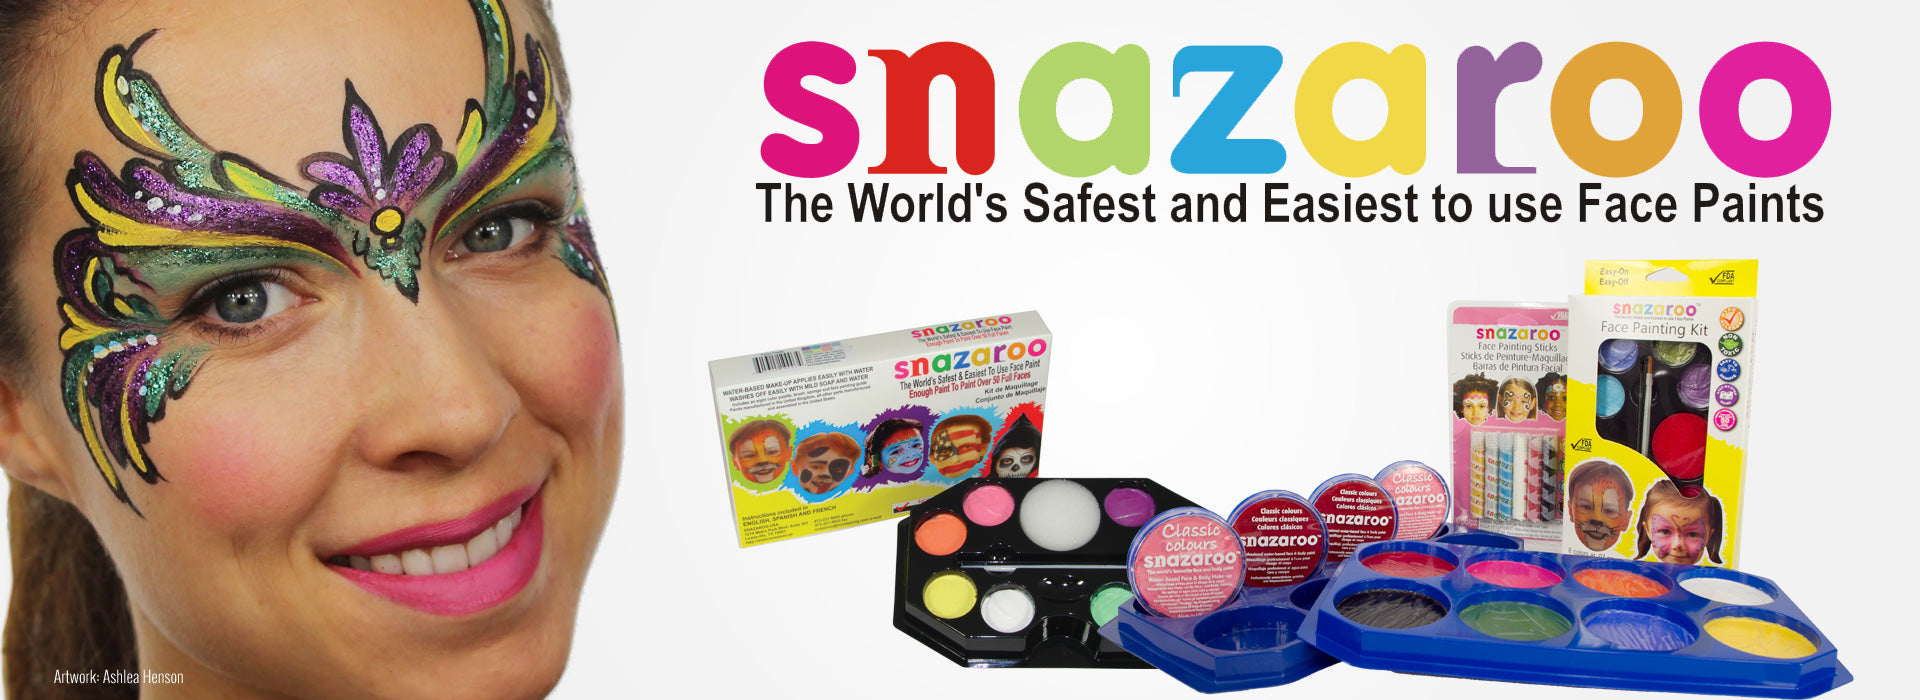 Snazaroo Face Paint  Silly Farm Supplies